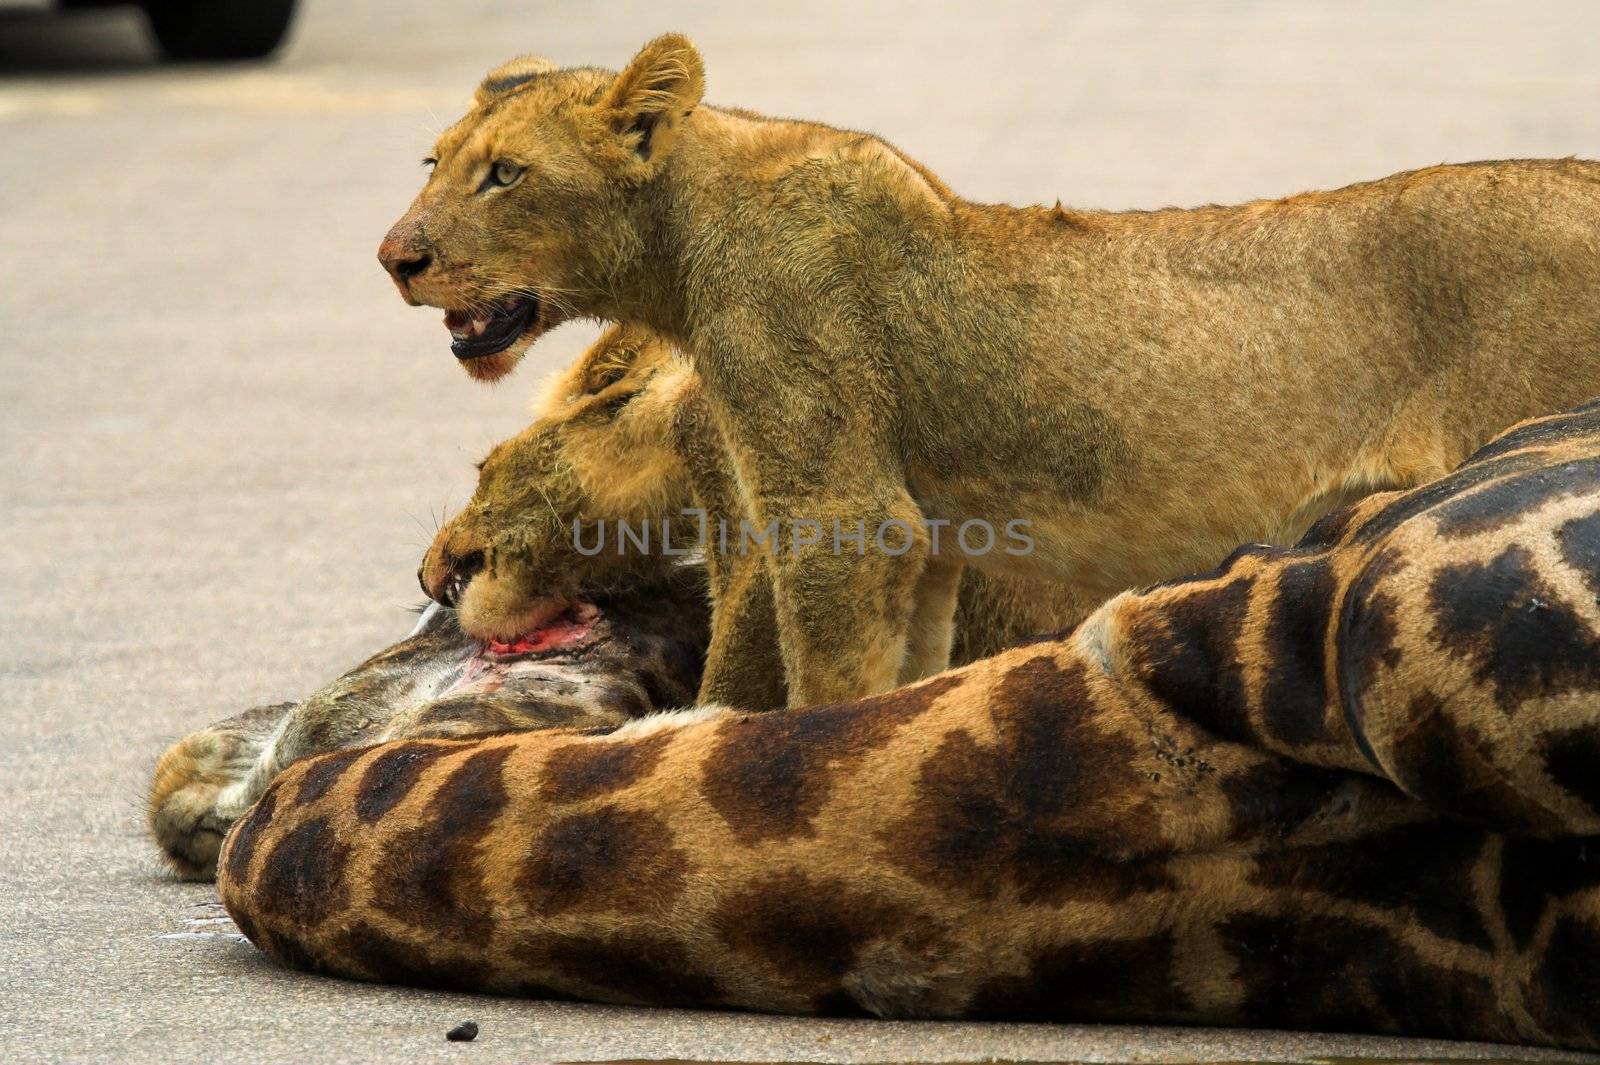 Lion Cubs feeding on a giraffe by nightowlza